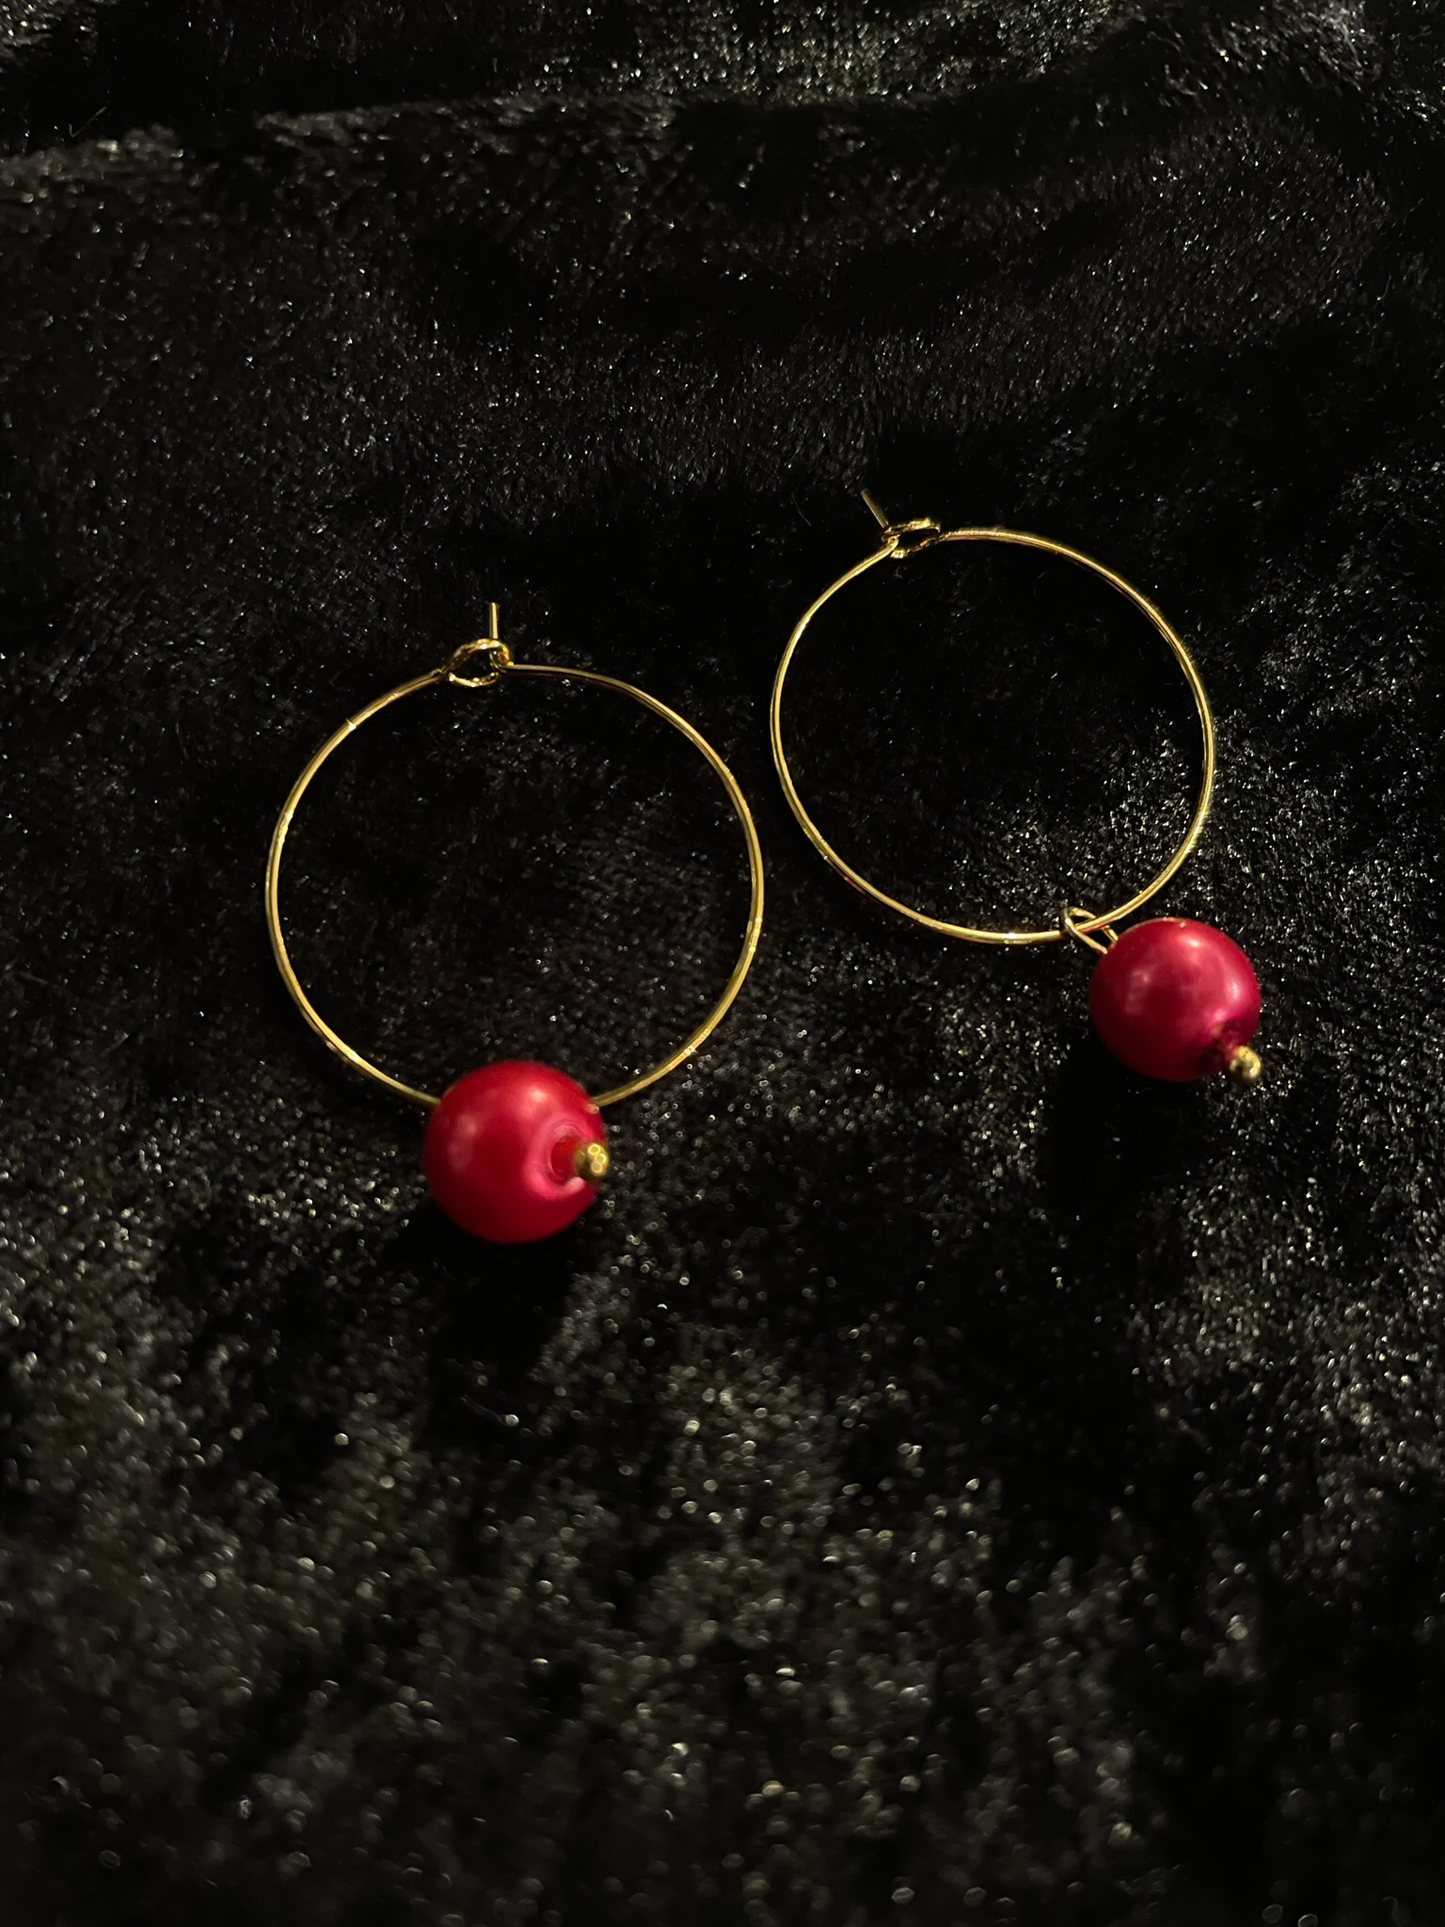 Festive bead earrings on hoops